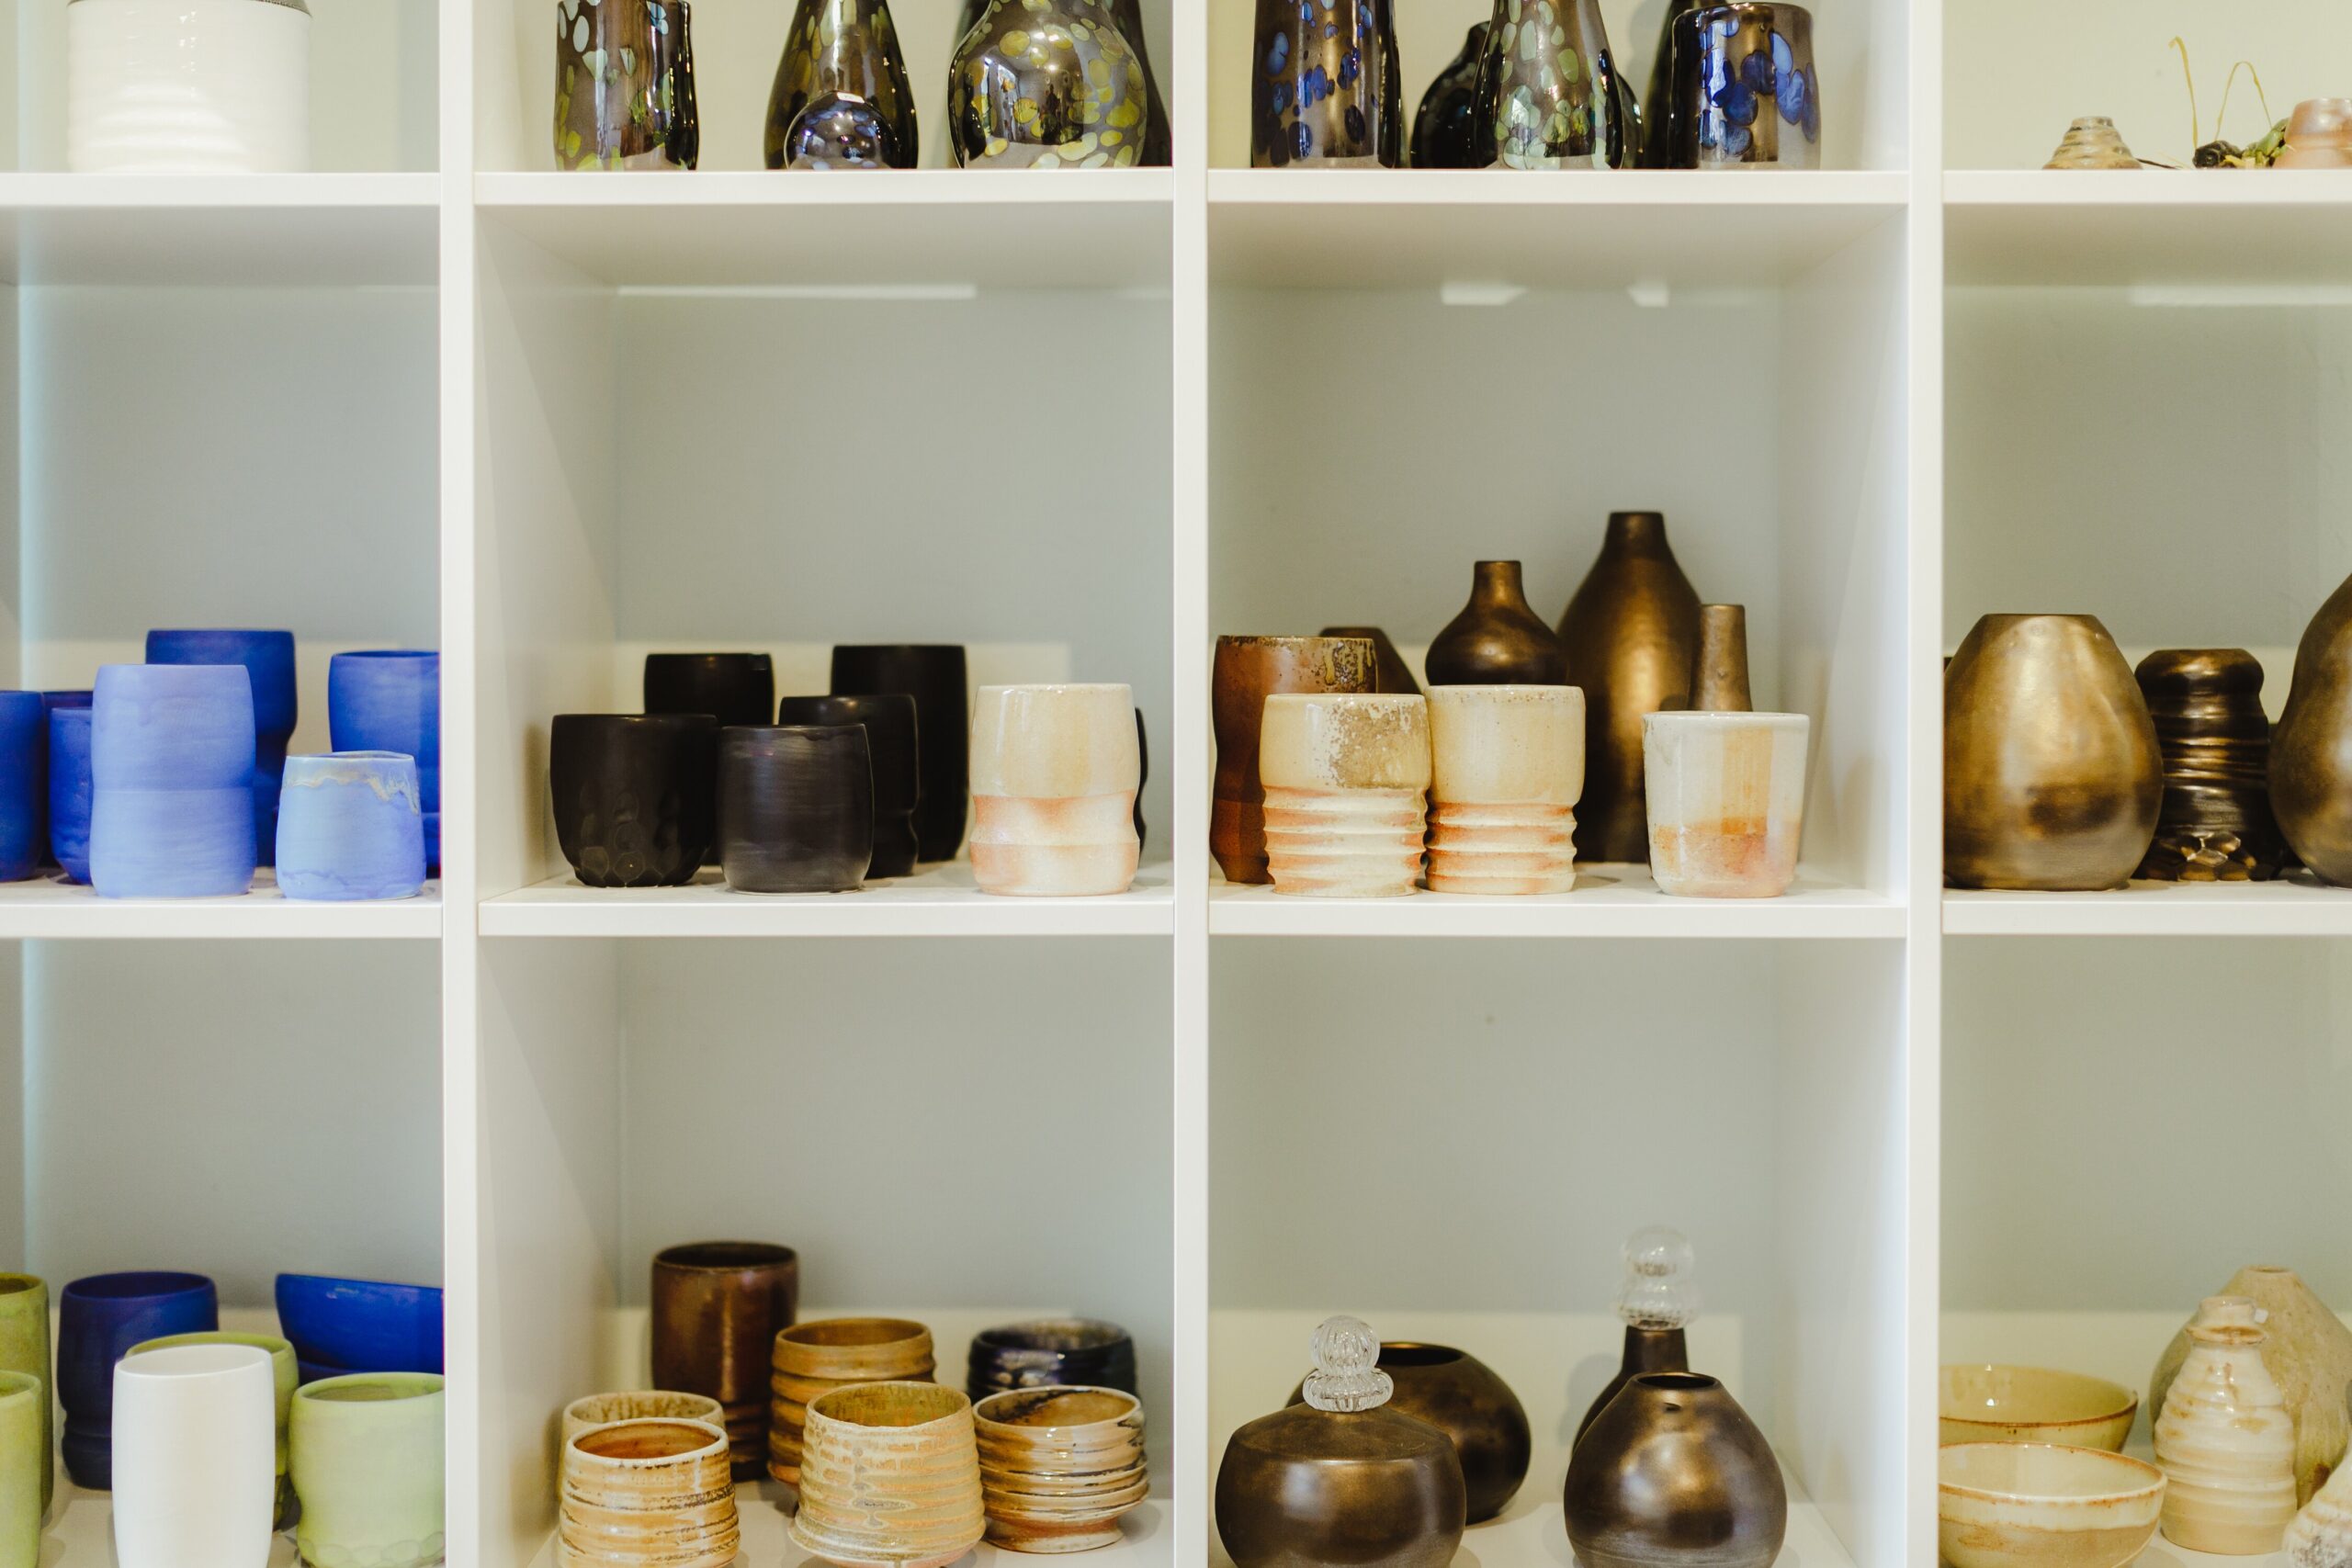 Ceramics displayed at Jeff Blandford Gallery.